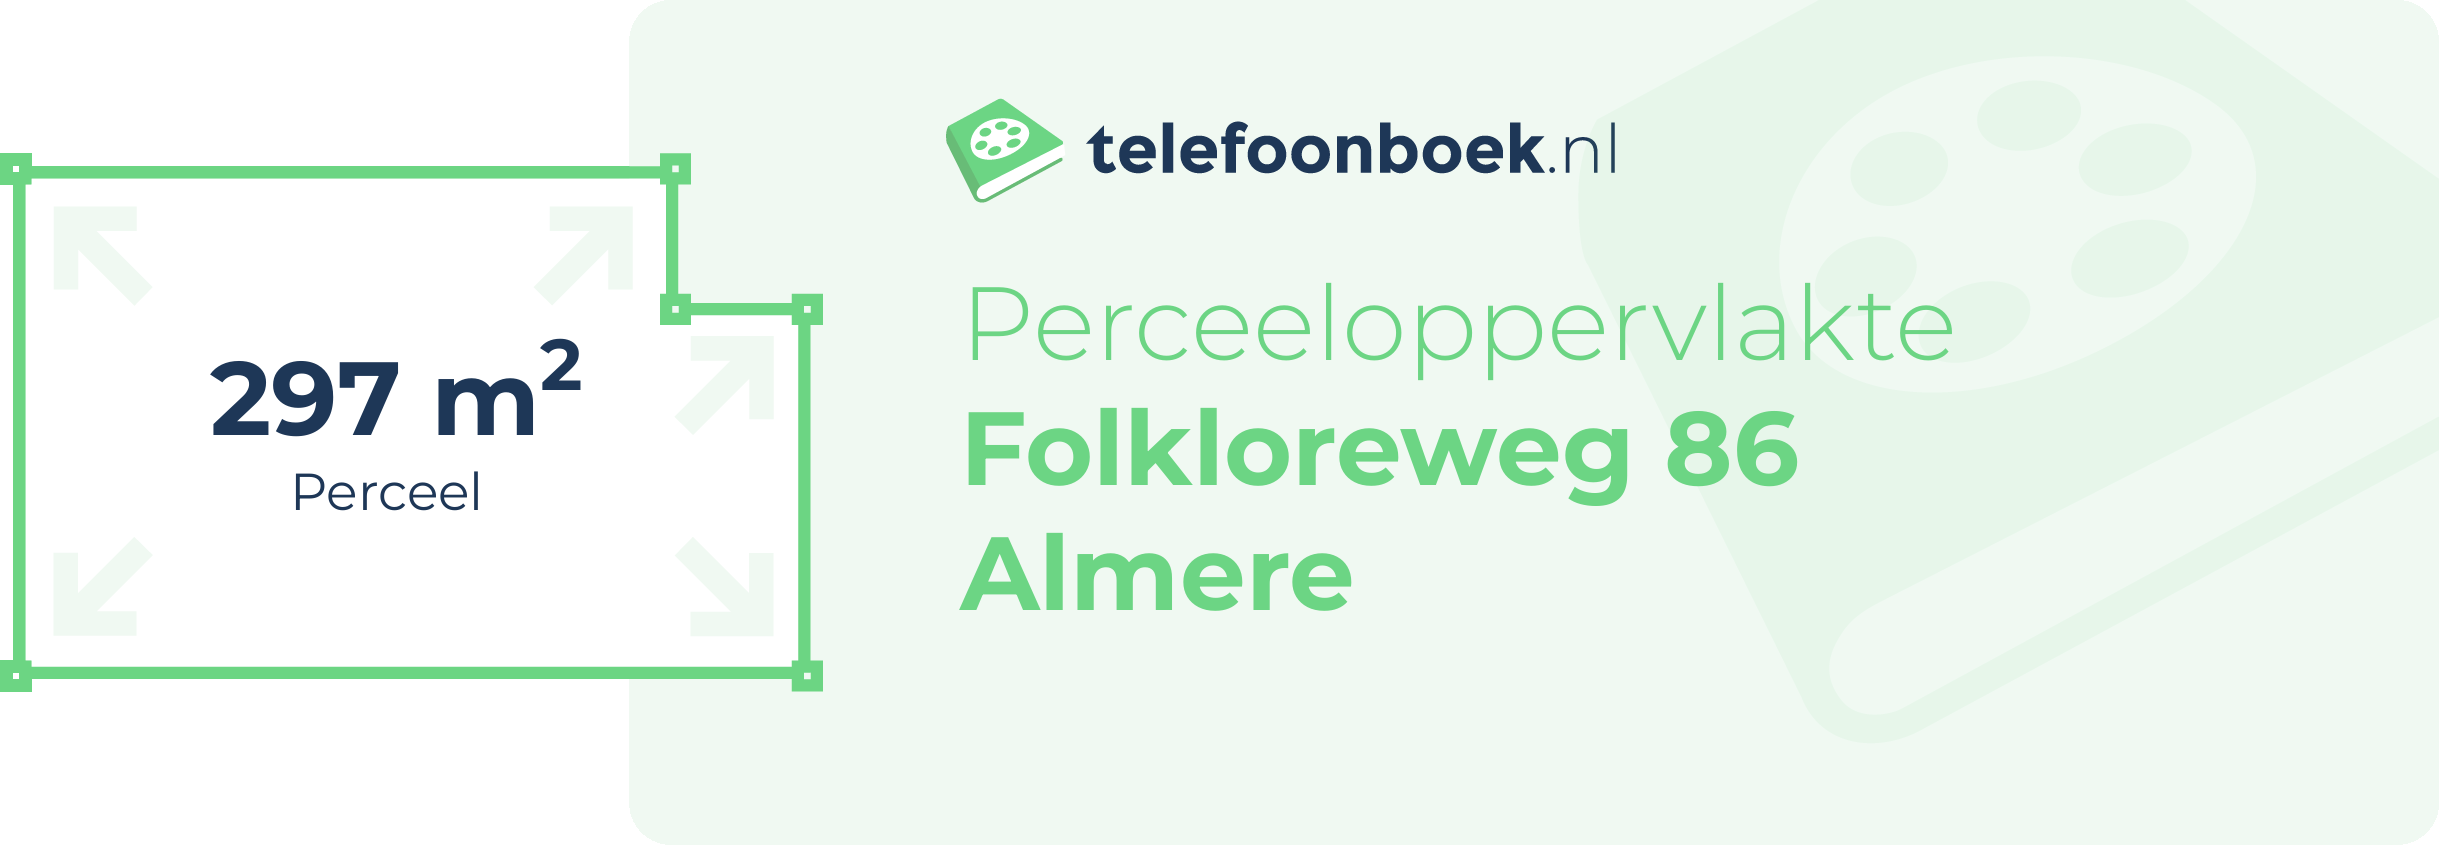 Perceeloppervlakte Folkloreweg 86 Almere